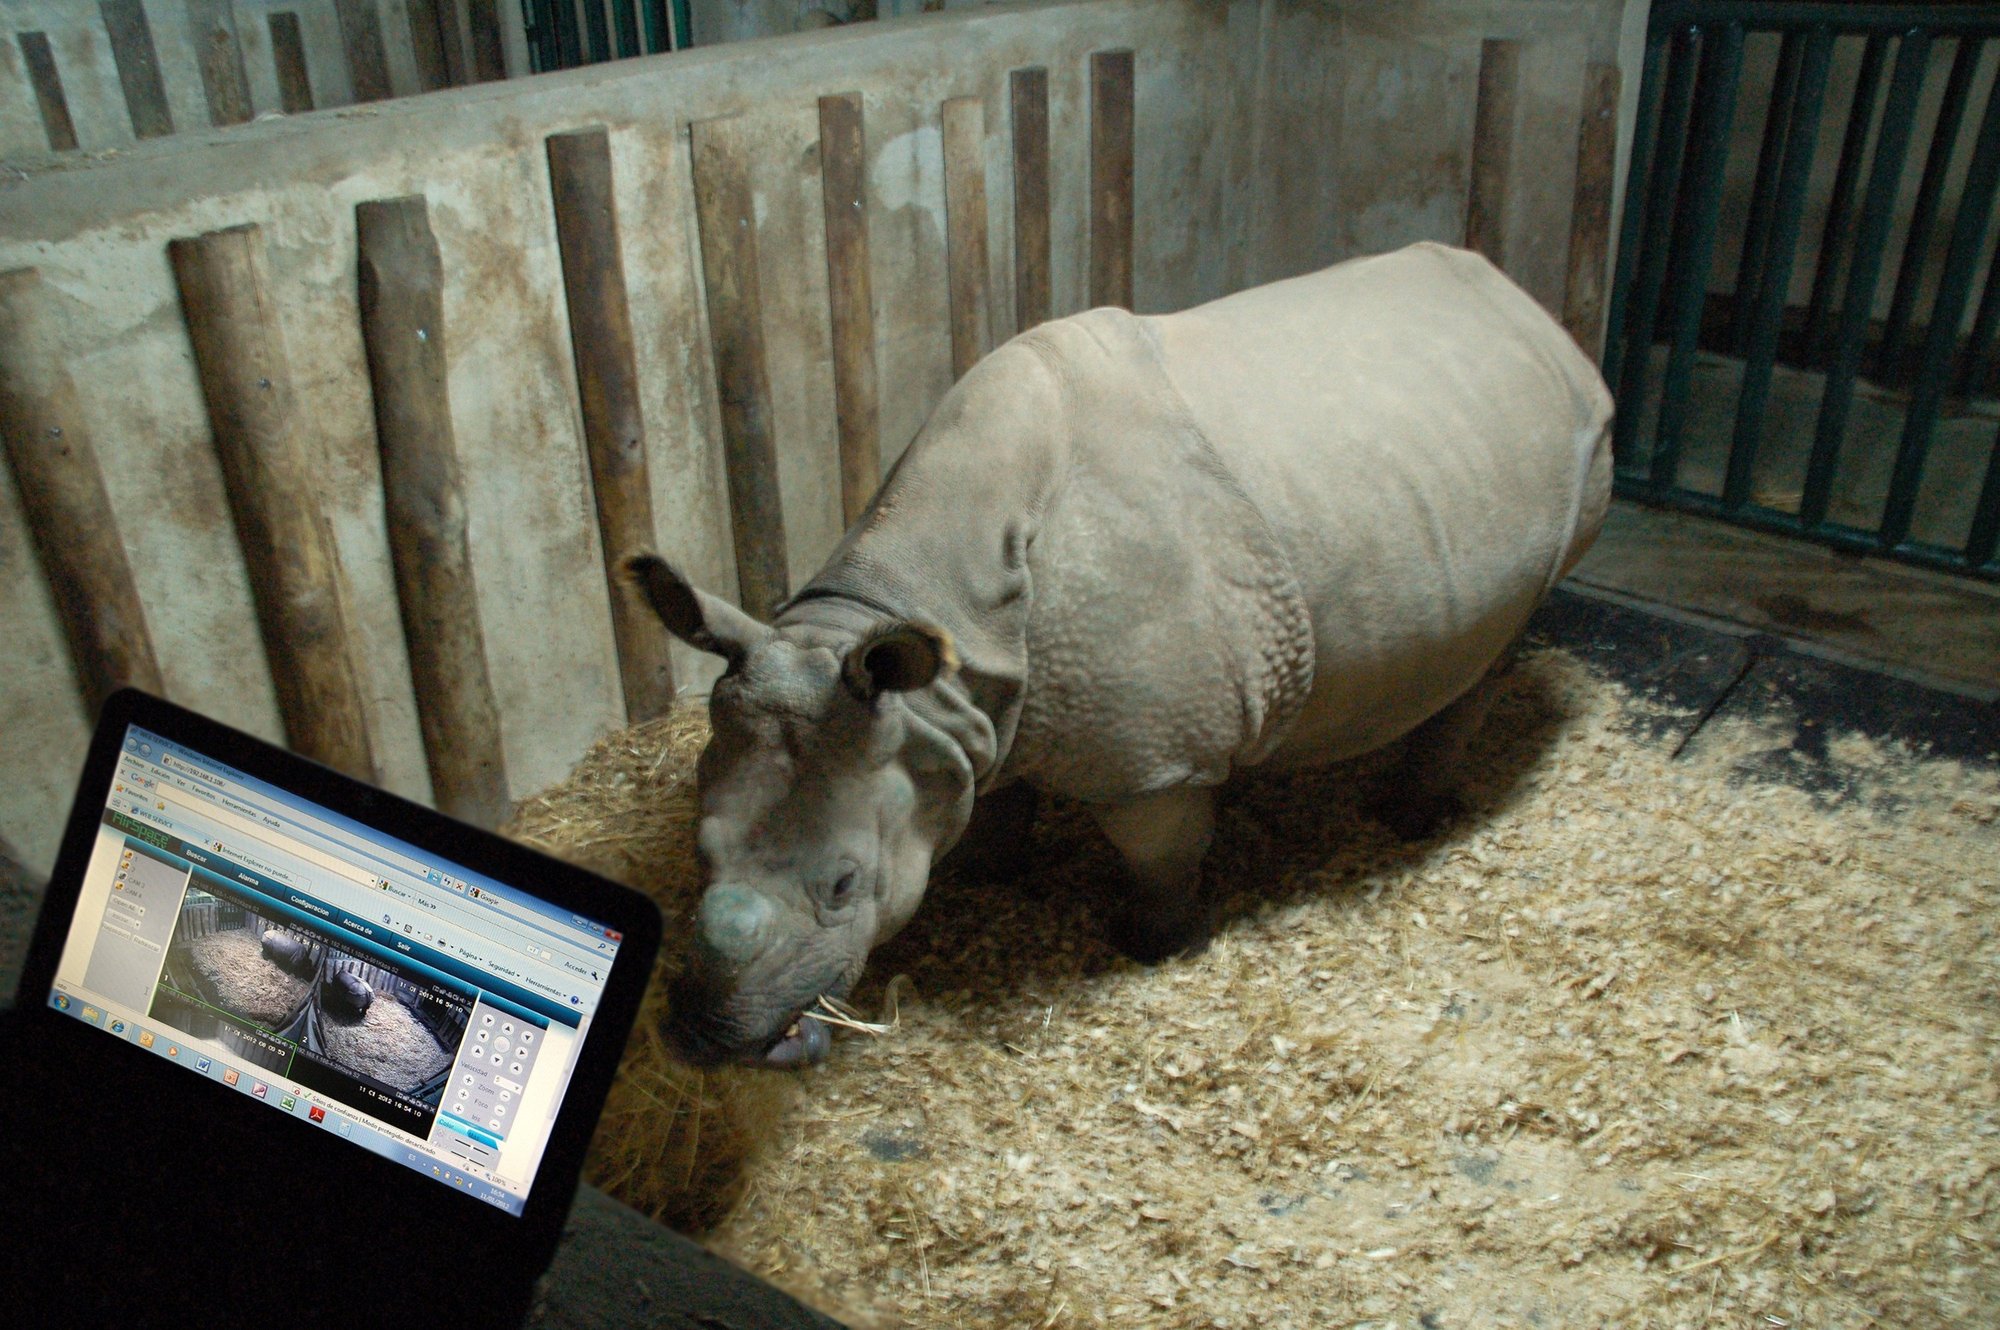 Terra Natura Benidorm incorpora cámaras con infrarrojos para controlar el parto de una rinoceronte